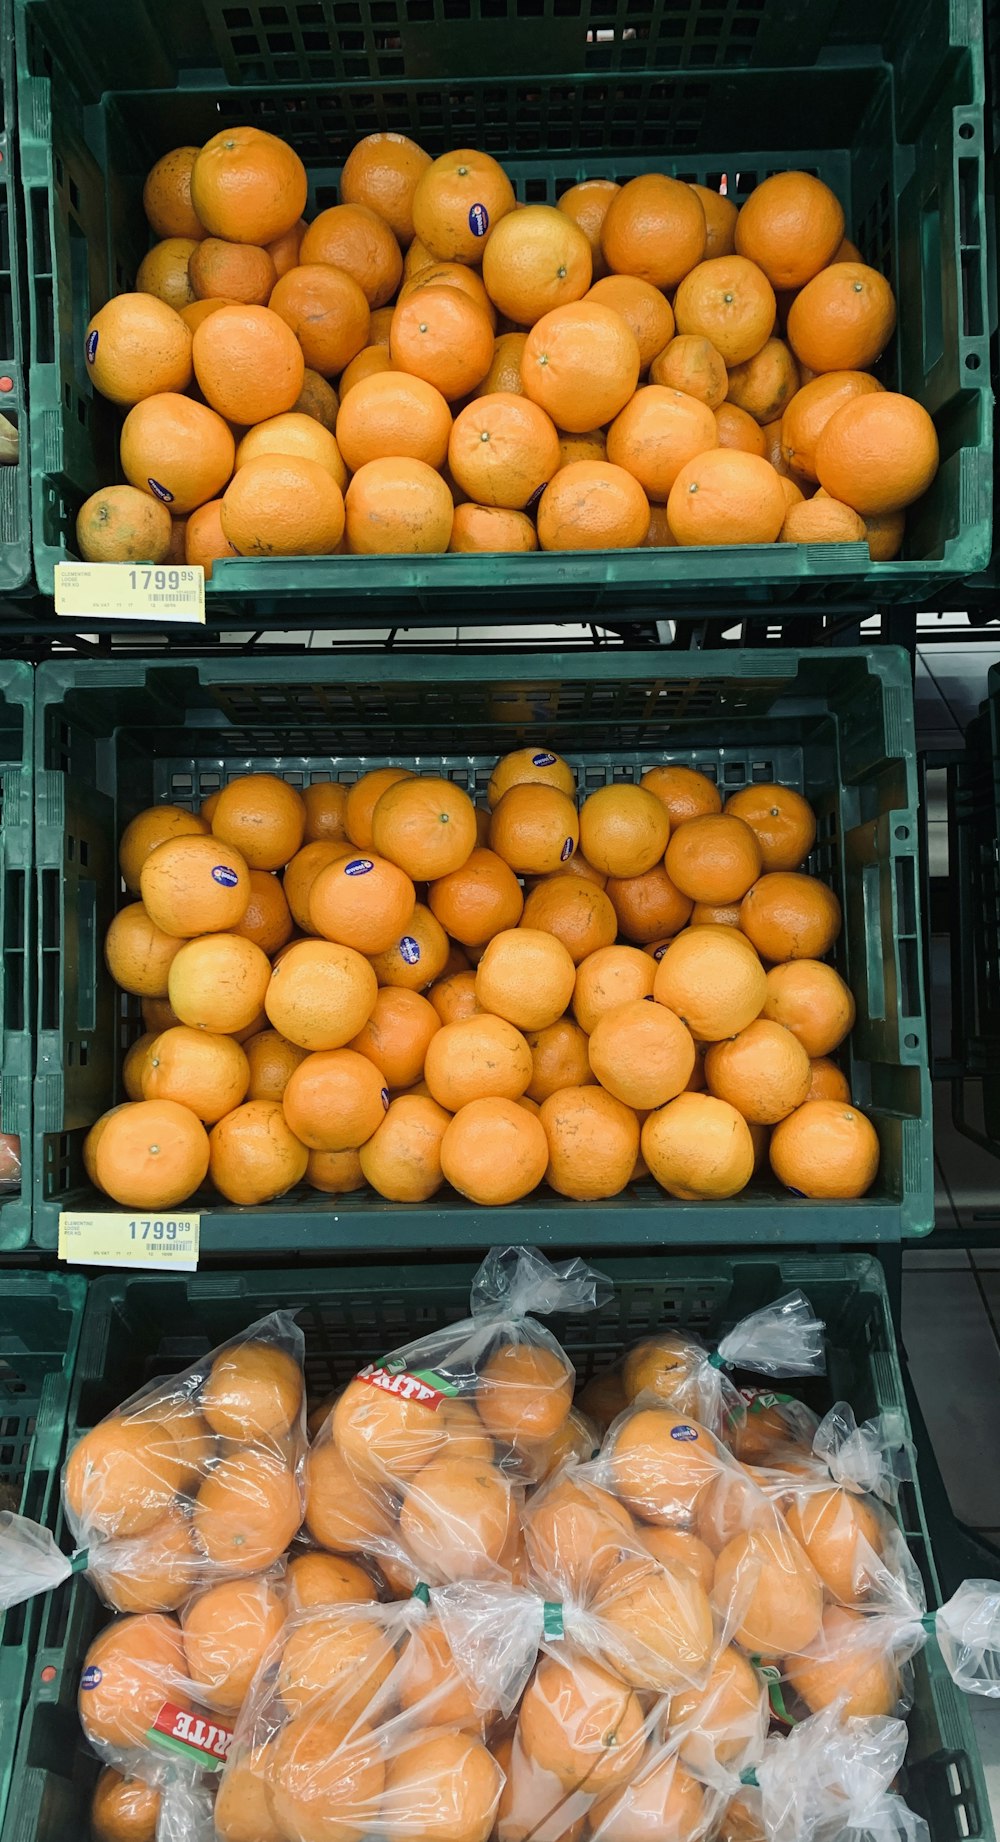 three baskets of oranges